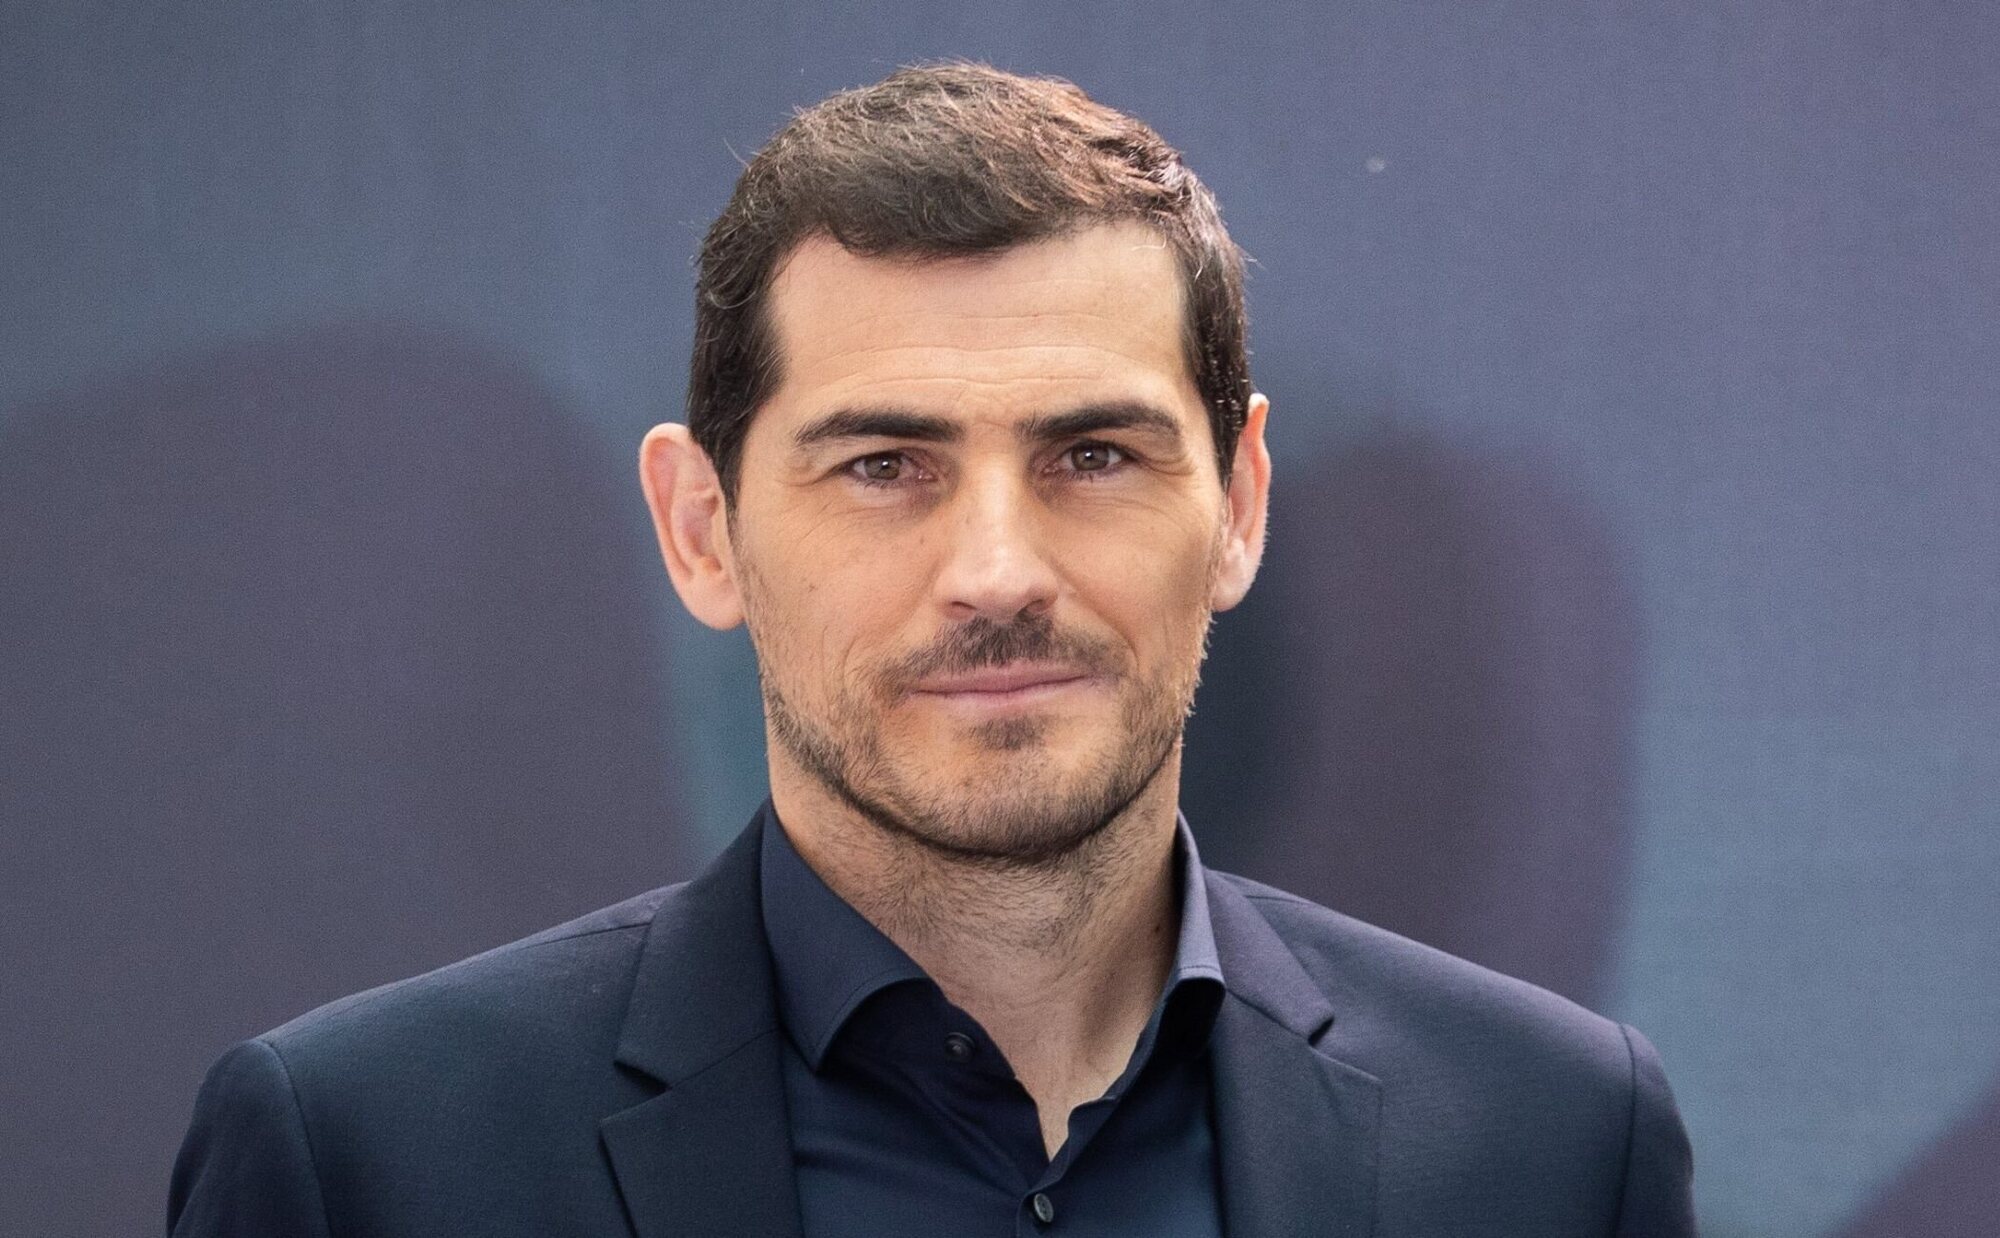 La nueva ilusión de Iker Casillas confirma su relación: "Nos estamos viendo desde enero"